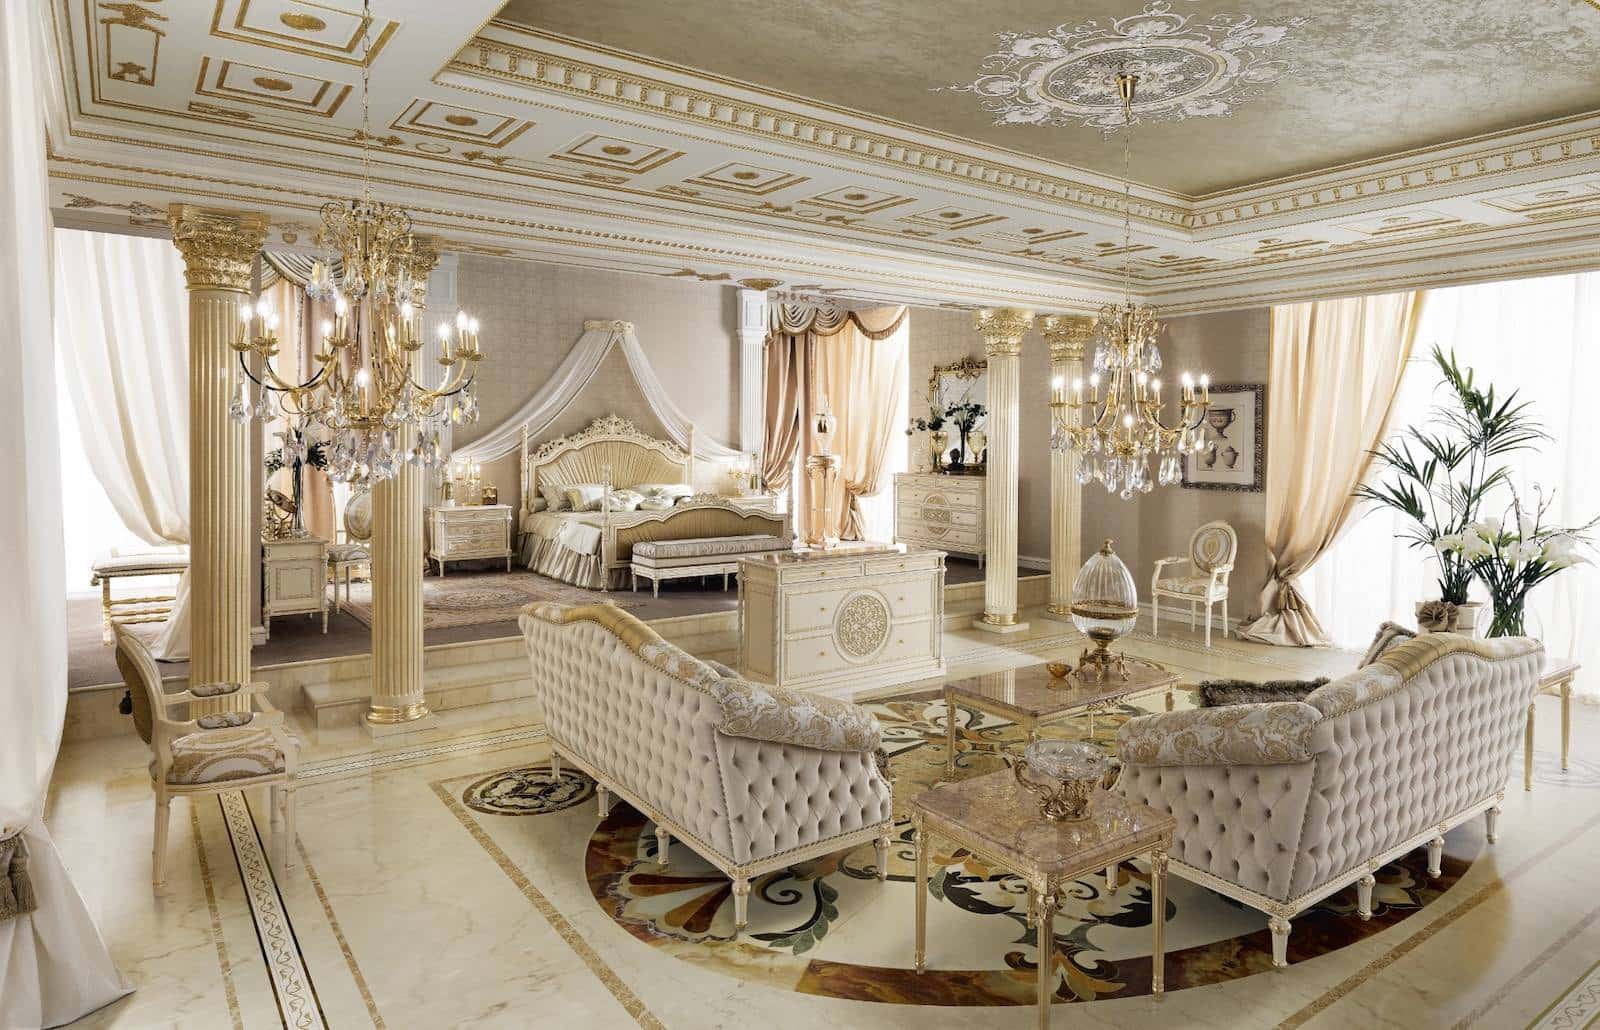 Классическая итальянская мебель столовая на заказ роскошный обеденный зал итальянский стиль зала венецианская мебель роскошные стулья сделано в италии мебель класса люкс. Высококачественный дизайн итальянской роскошной элегантной мебели